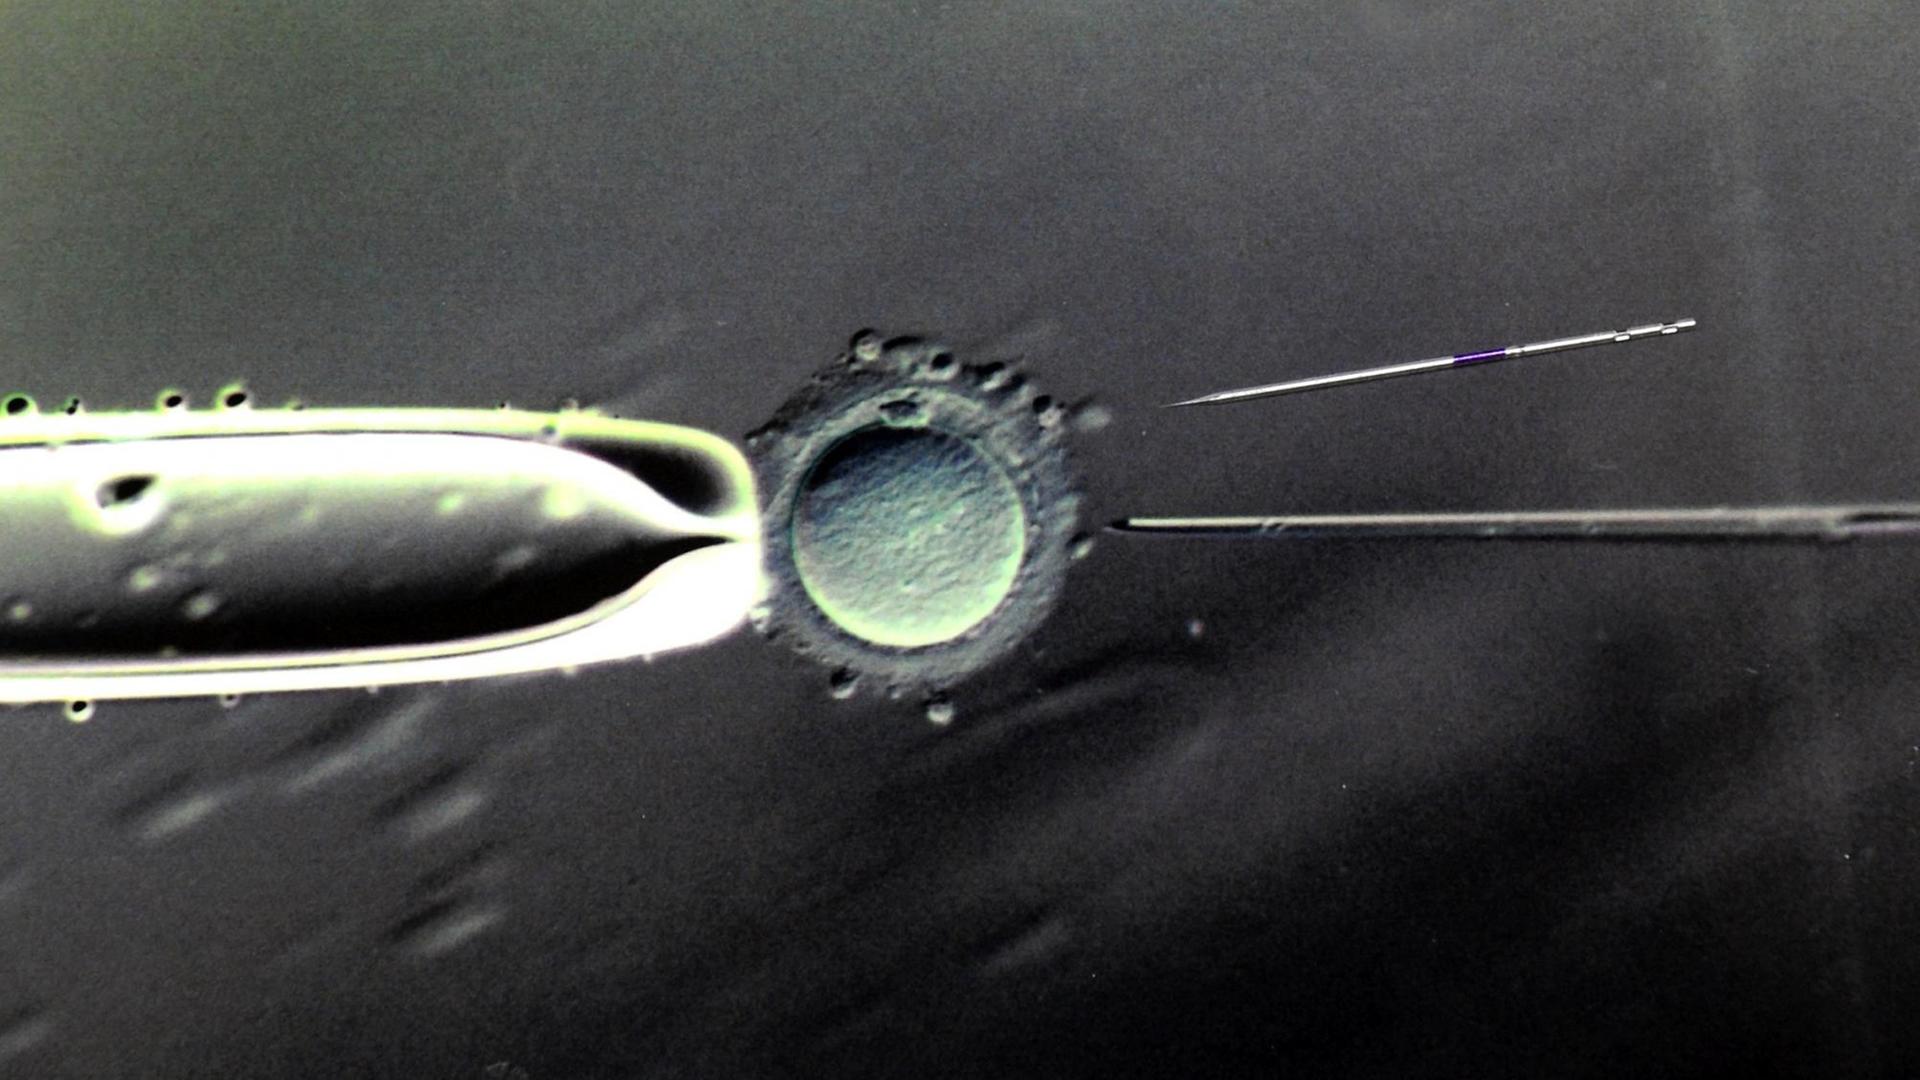 Befruchtung einer Eizelle mit einer Injektionspipette